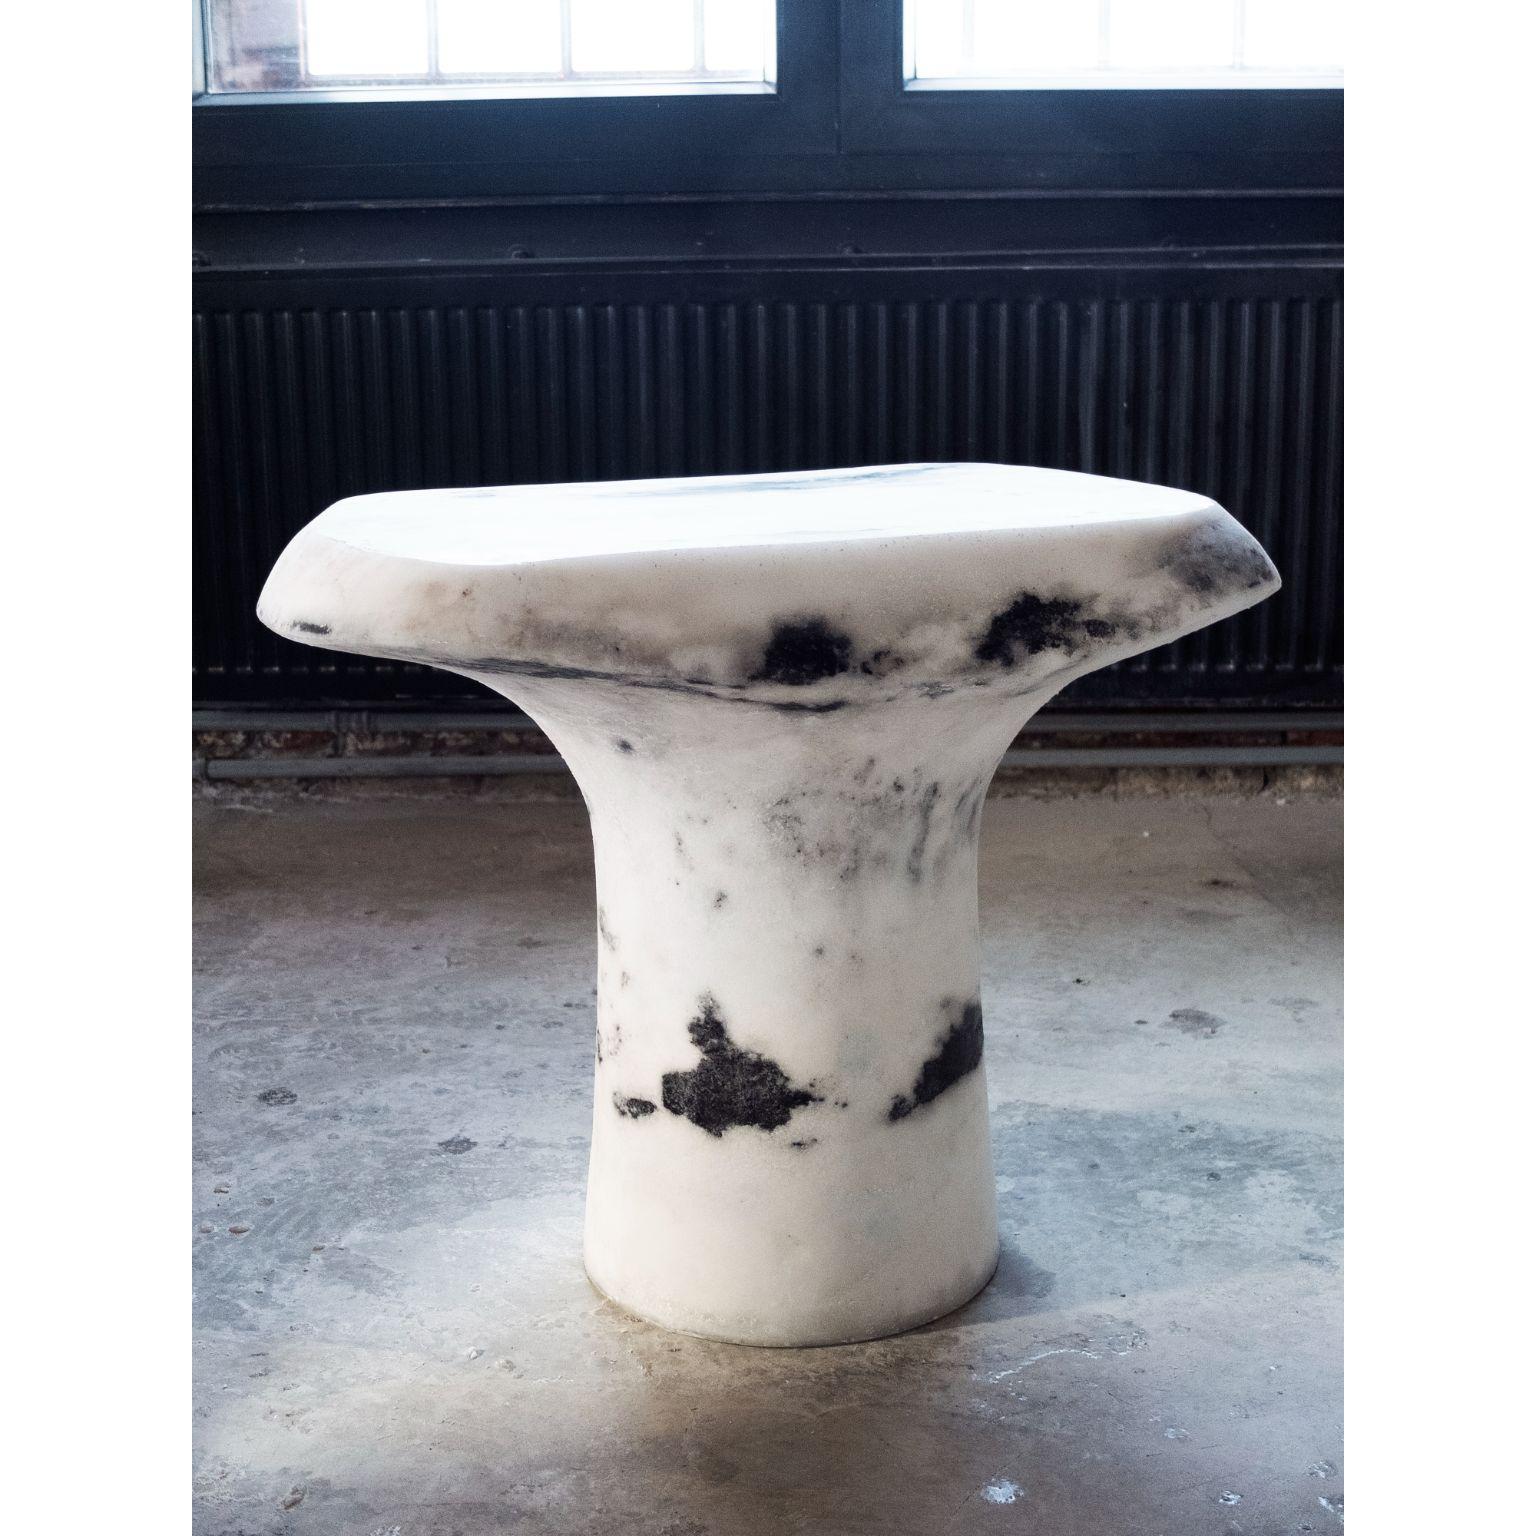 Weißer T-T-Tisch von Roxane Lahidji
Abmessungen: T 60 x B 40 x H 50 cm.
MATERIALIEN: Marmor Salz.
Gewicht: 50 kg

Roxane Lahidji ist eine Sozialdesignerin, die sich auf die Entwicklung und Anwendung ökologischer Materialien spezialisiert hat. Ihre